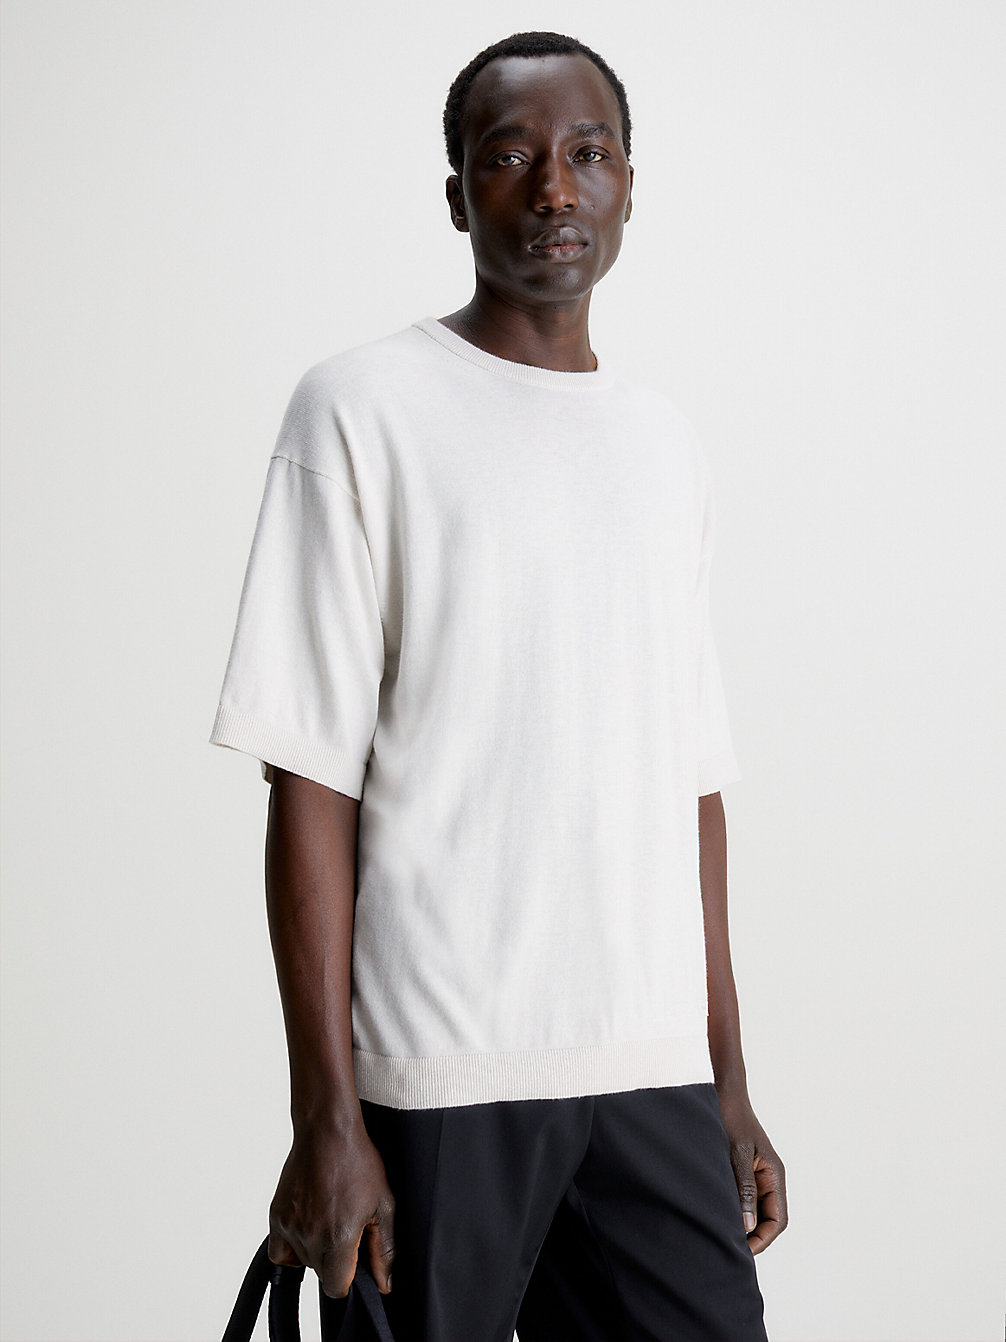 STONY BEIGE HEATHER > T-Shirt Coolmax Z Przetworzonego Materiału > undefined Mężczyźni - Calvin Klein